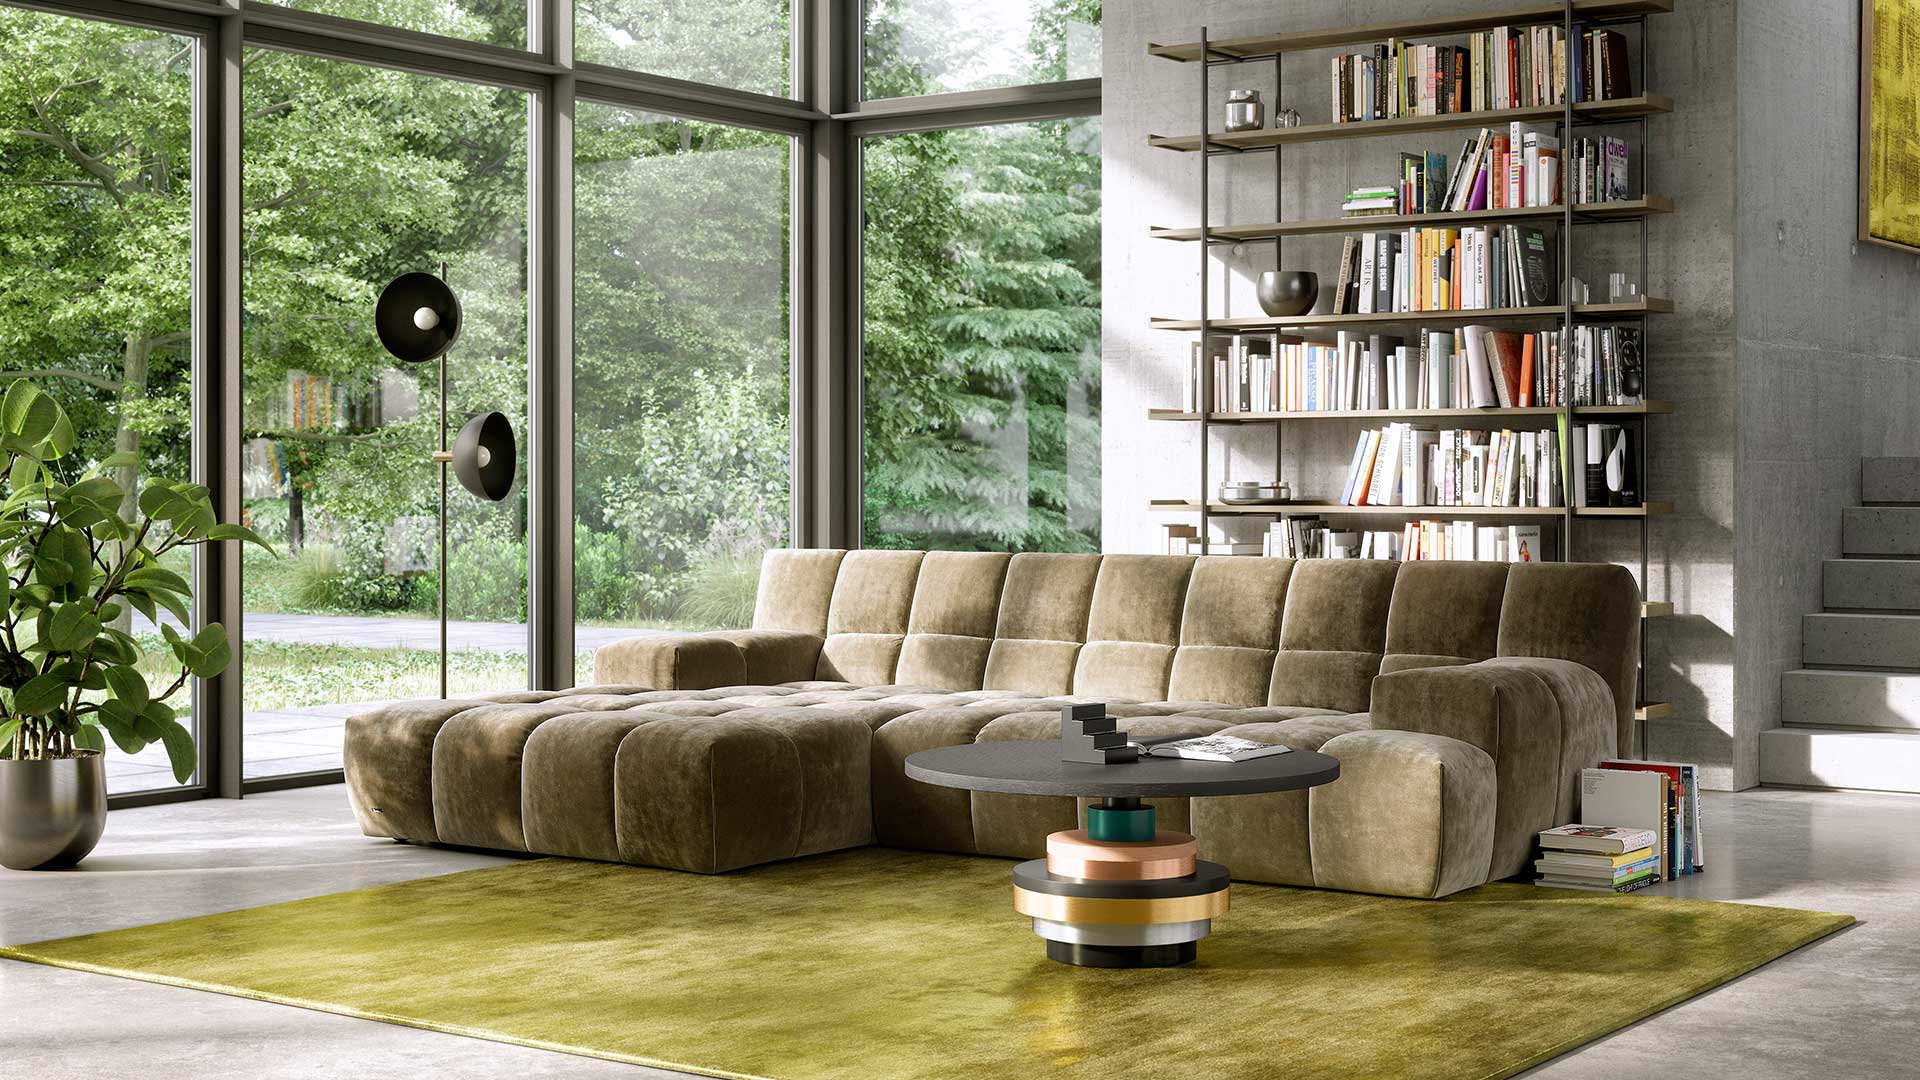 Wohnzimmer in Betonoptik mit der Bretz Cloud 7 Couch in olivfarbendem Velours gepolstert.